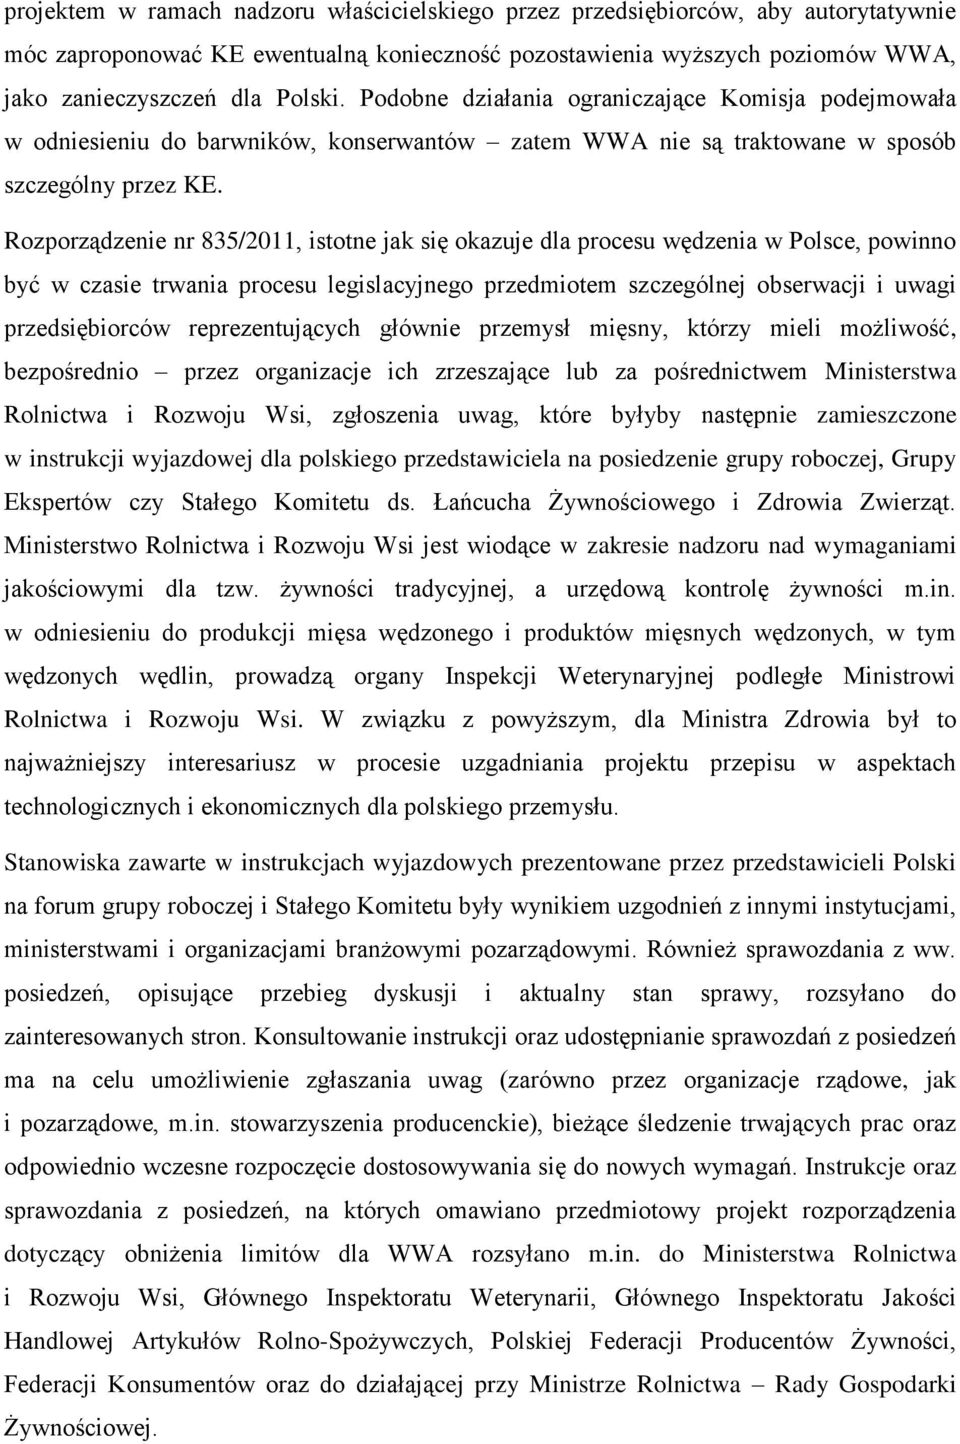 Rozporządzenie nr 835/2011, istotne jak się okazuje dla procesu wędzenia w Polsce, powinno być w czasie trwania procesu legislacyjnego przedmiotem szczególnej obserwacji i uwagi przedsiębiorców